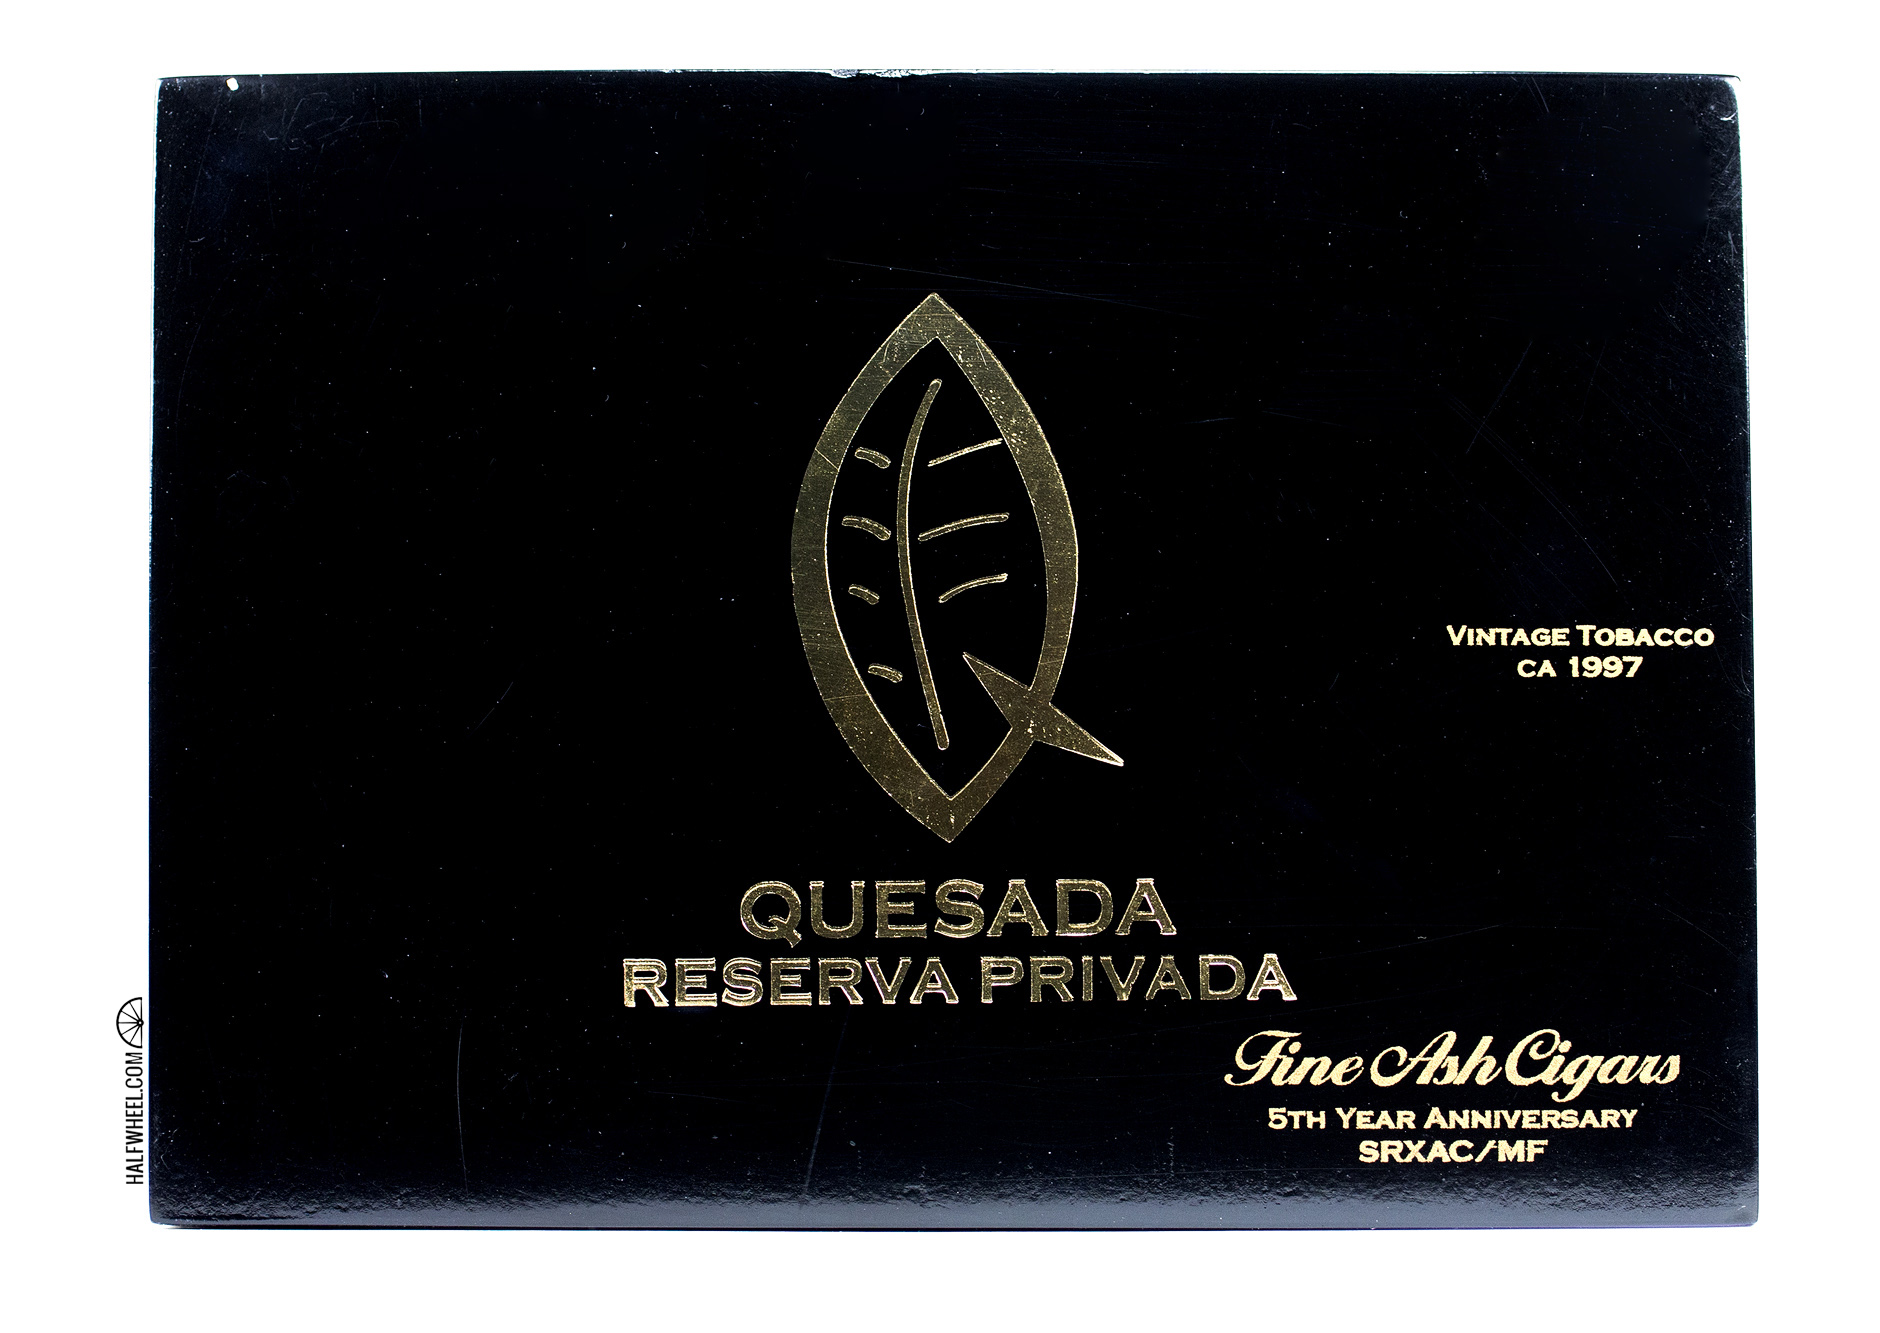 Quesada Reserva Privada Fine Ash Cigars 5th Anniversary Box 1